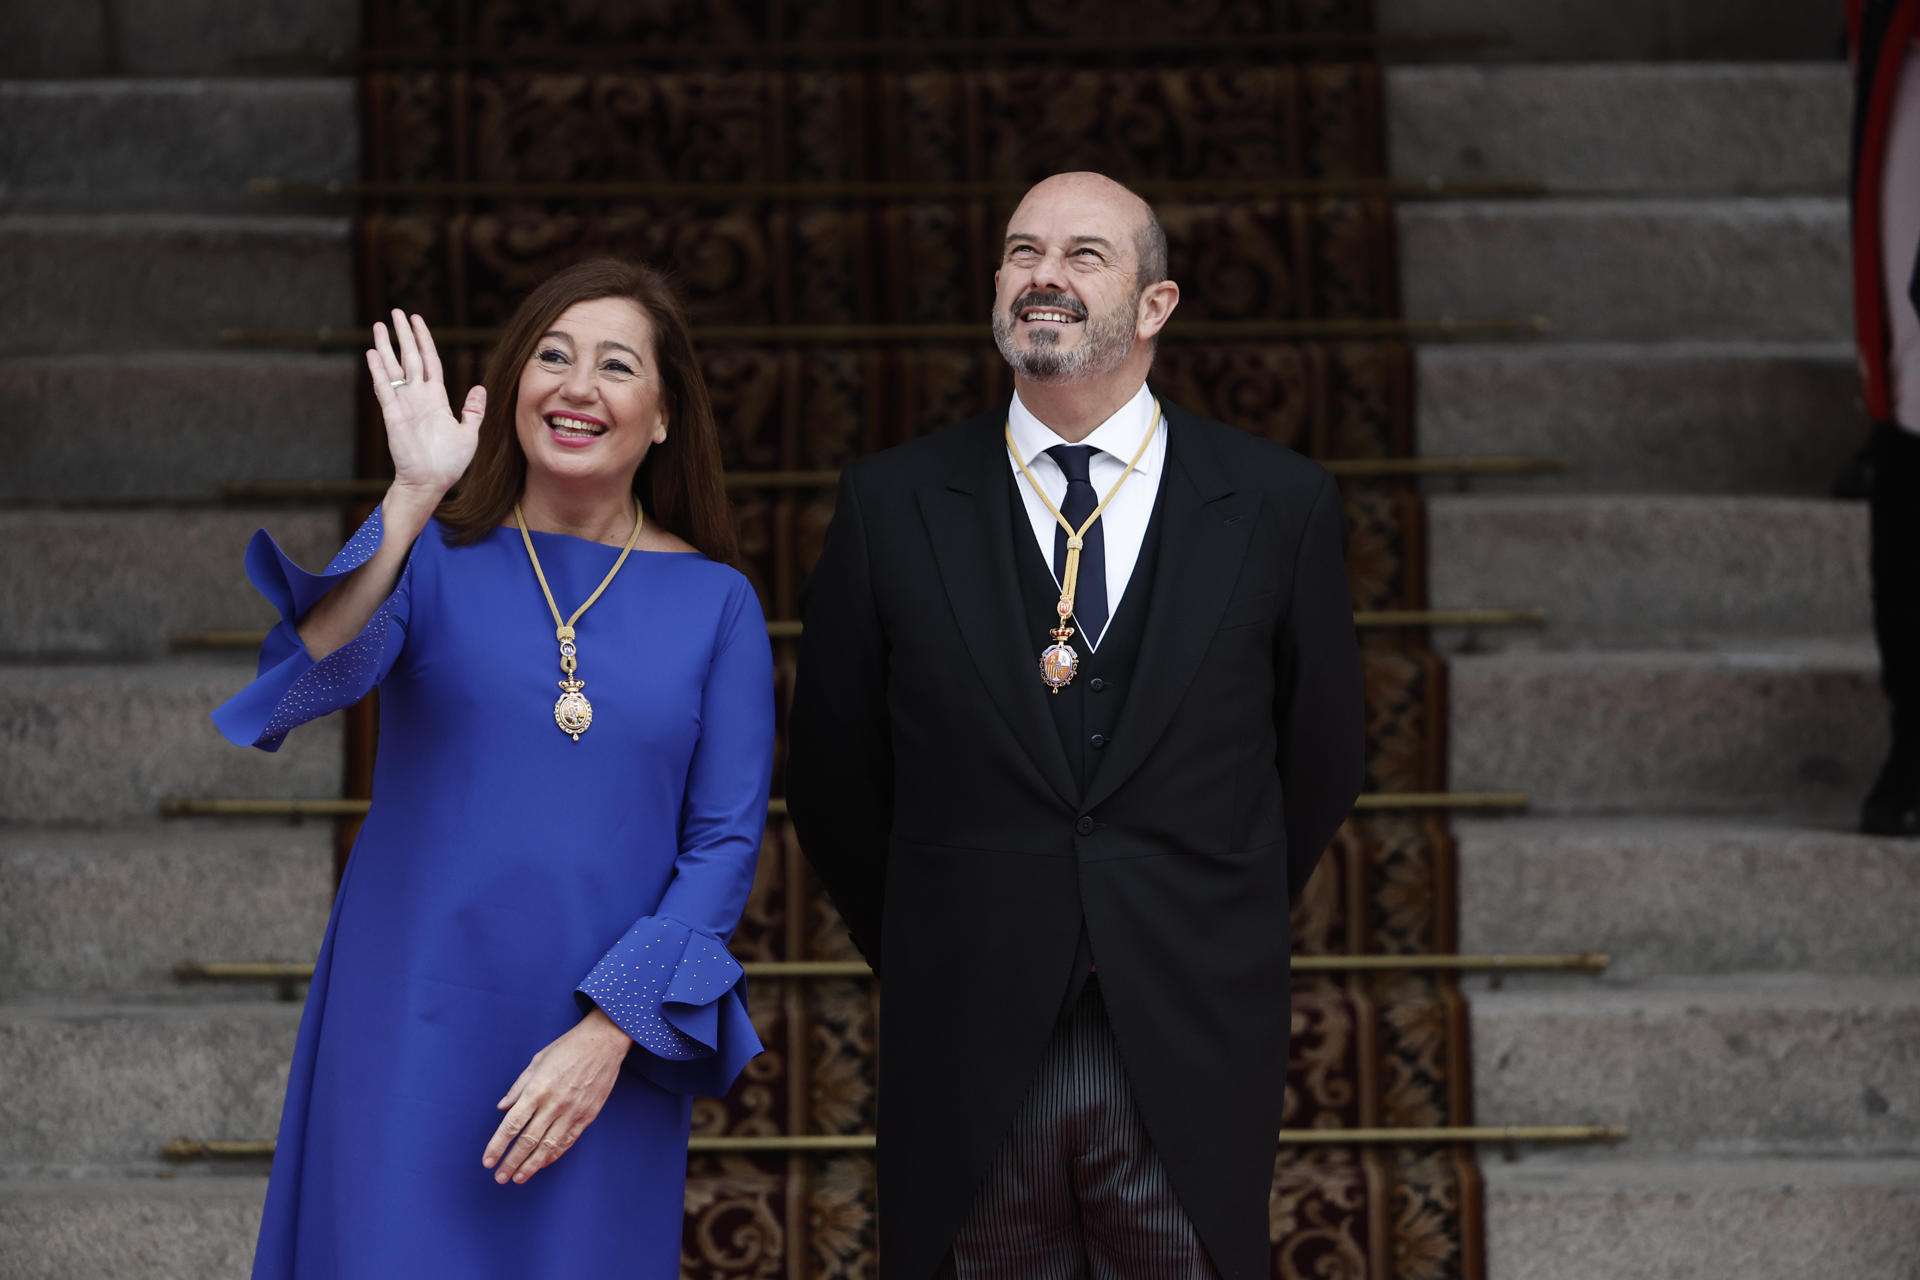 Francina Armengol cita a Vicent Andrés Estellés en la jura de la Constitución de Leonor